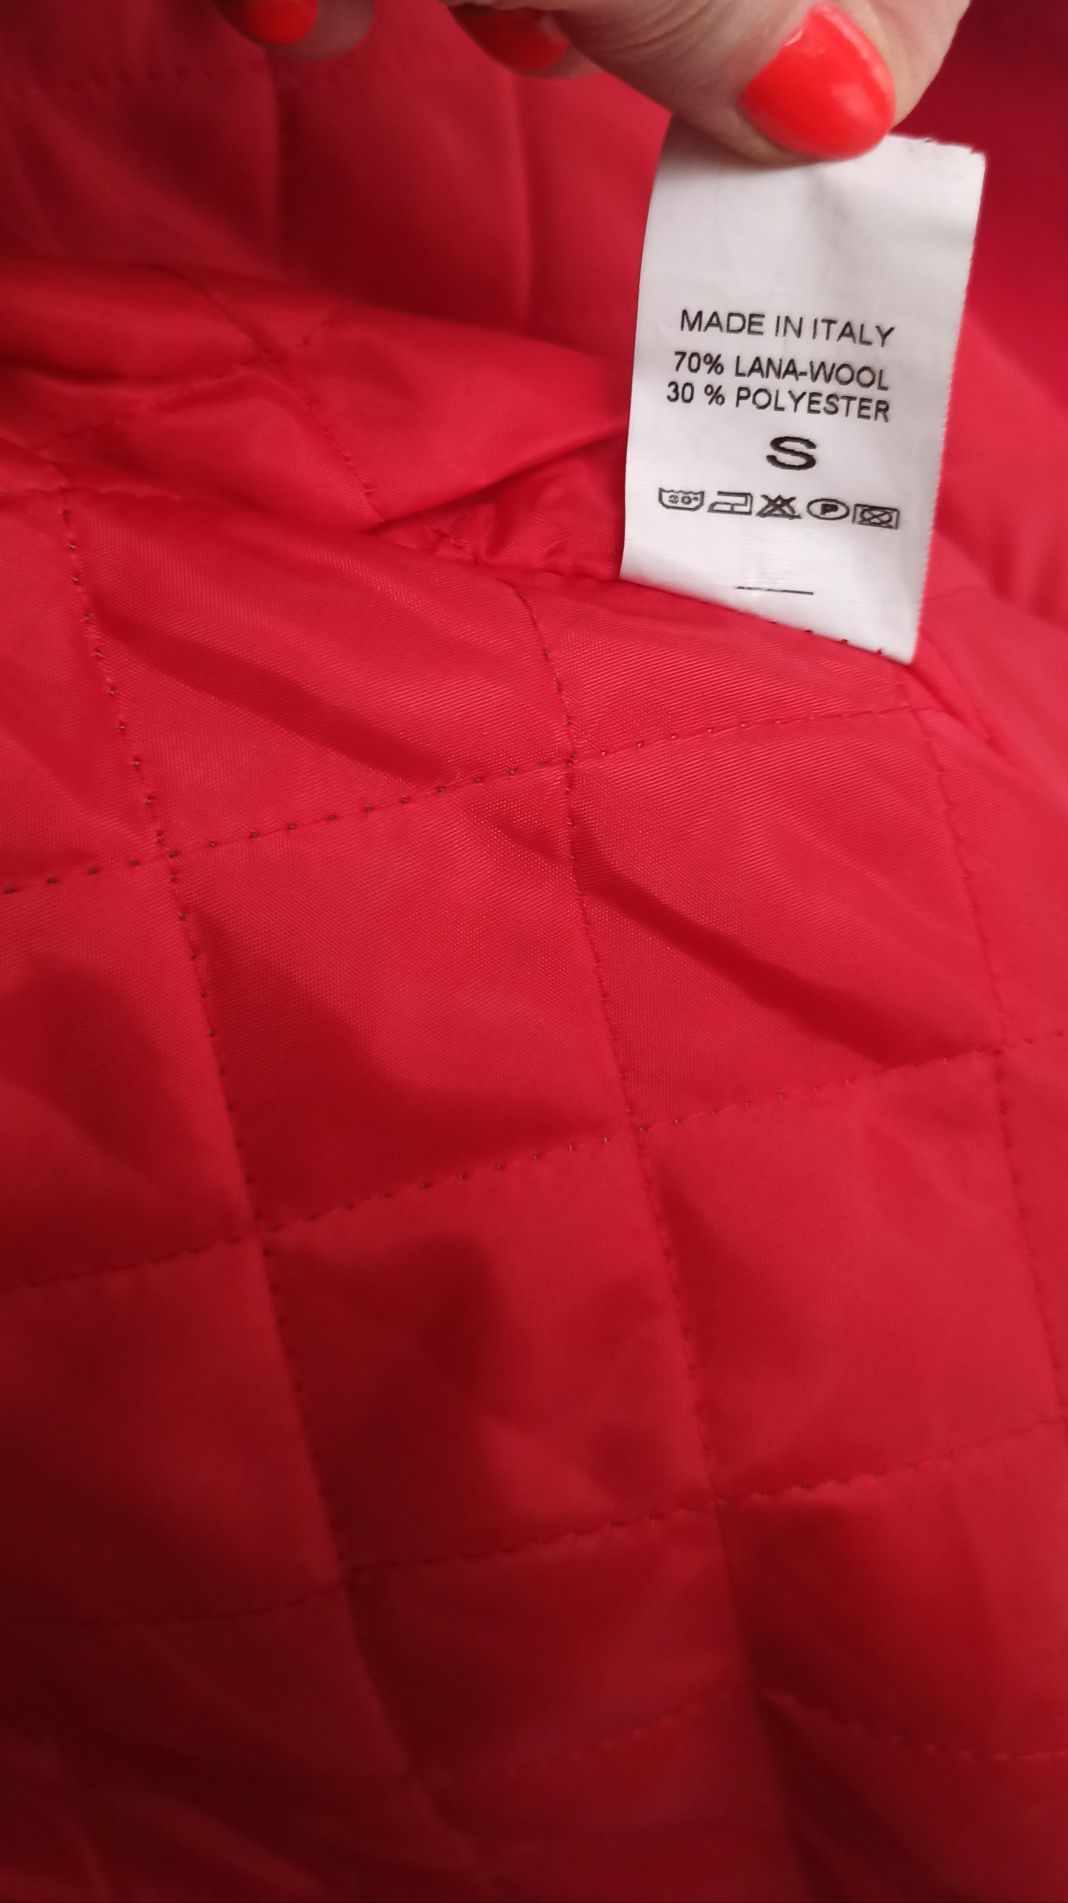 Płaszcz/kurtka czerwony